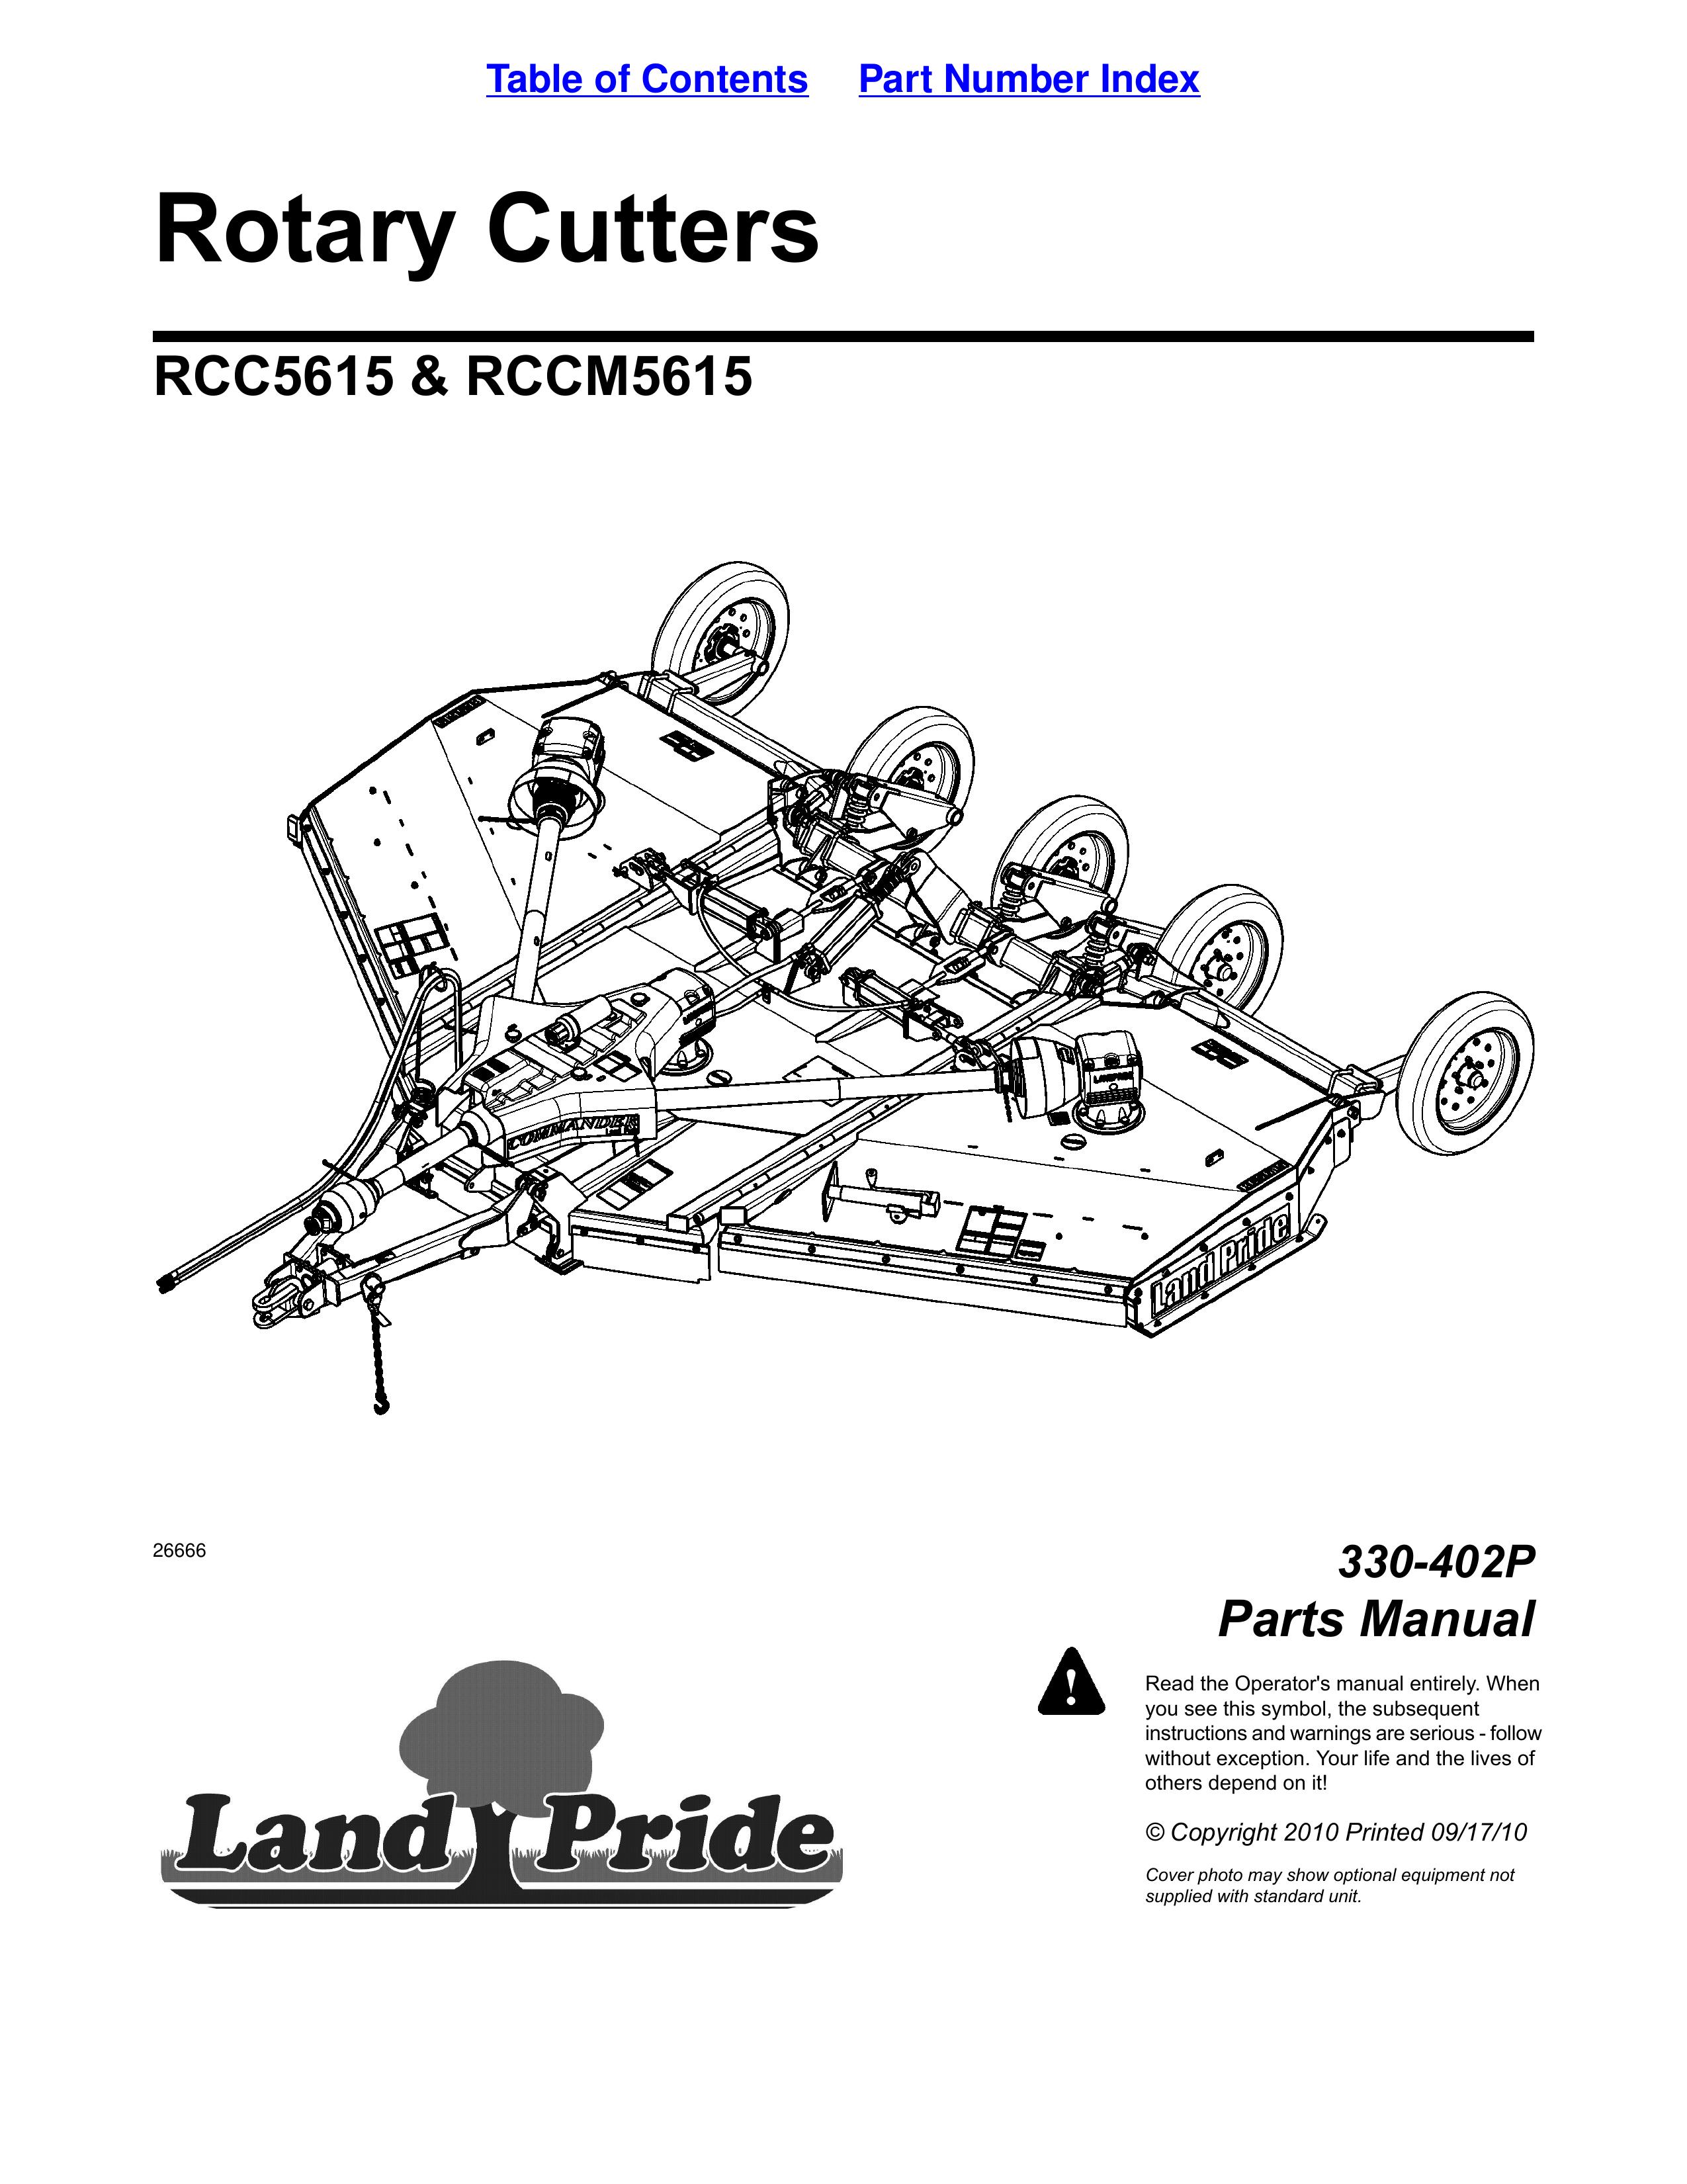 Land Pride RCCM5615 Brush Cutter User Manual